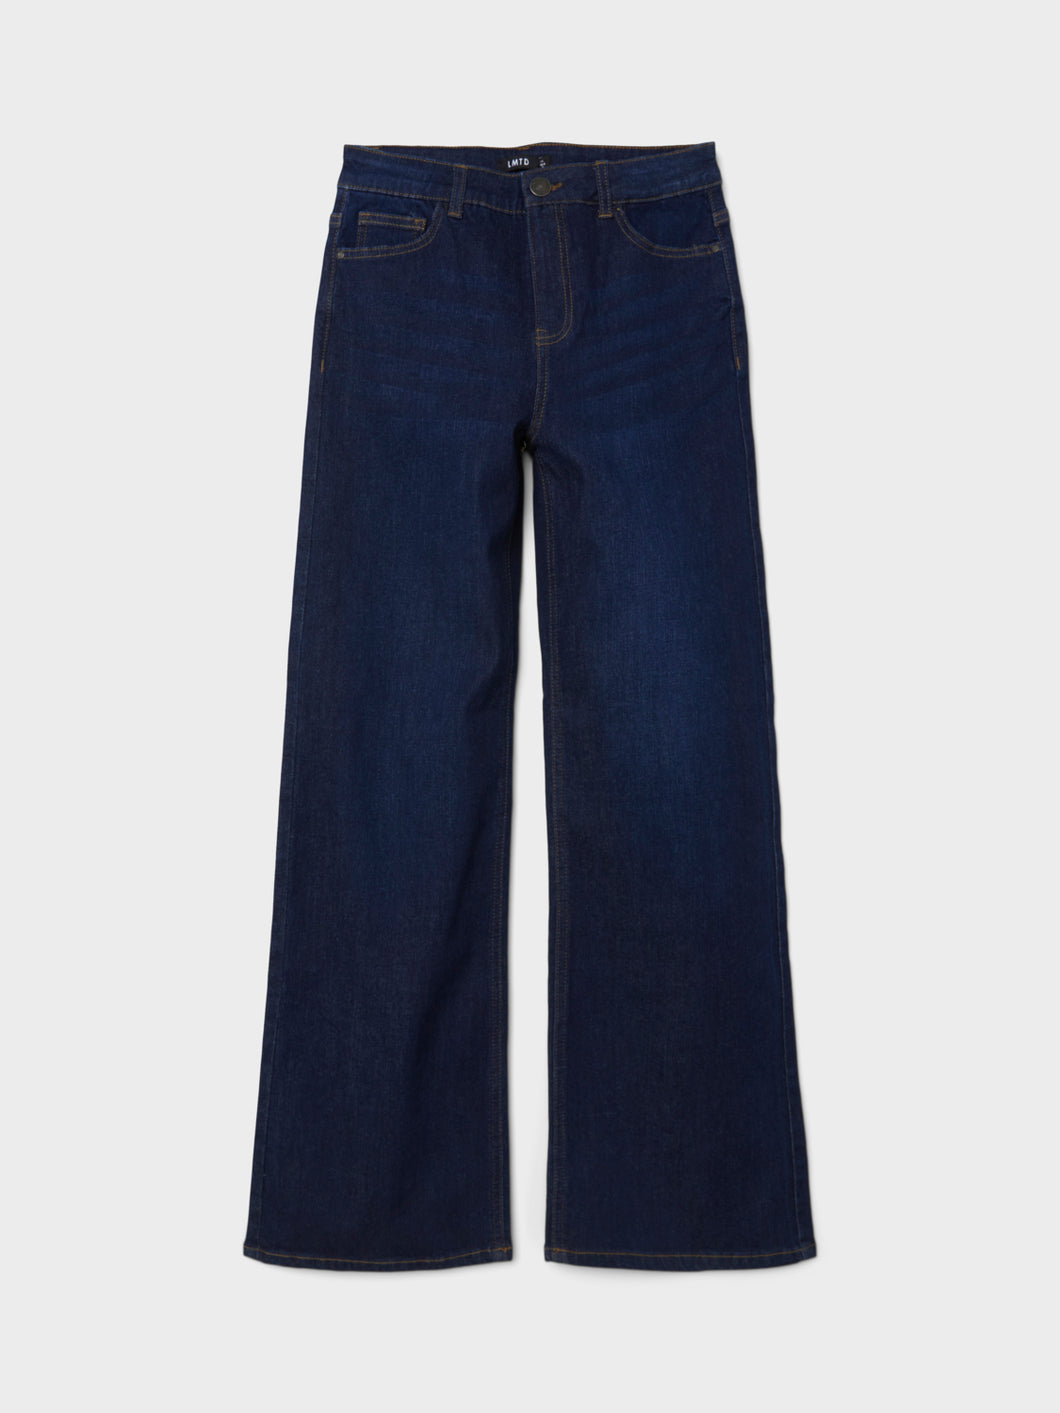 NLFTILINETTE Jeans - Dark Blue Denim